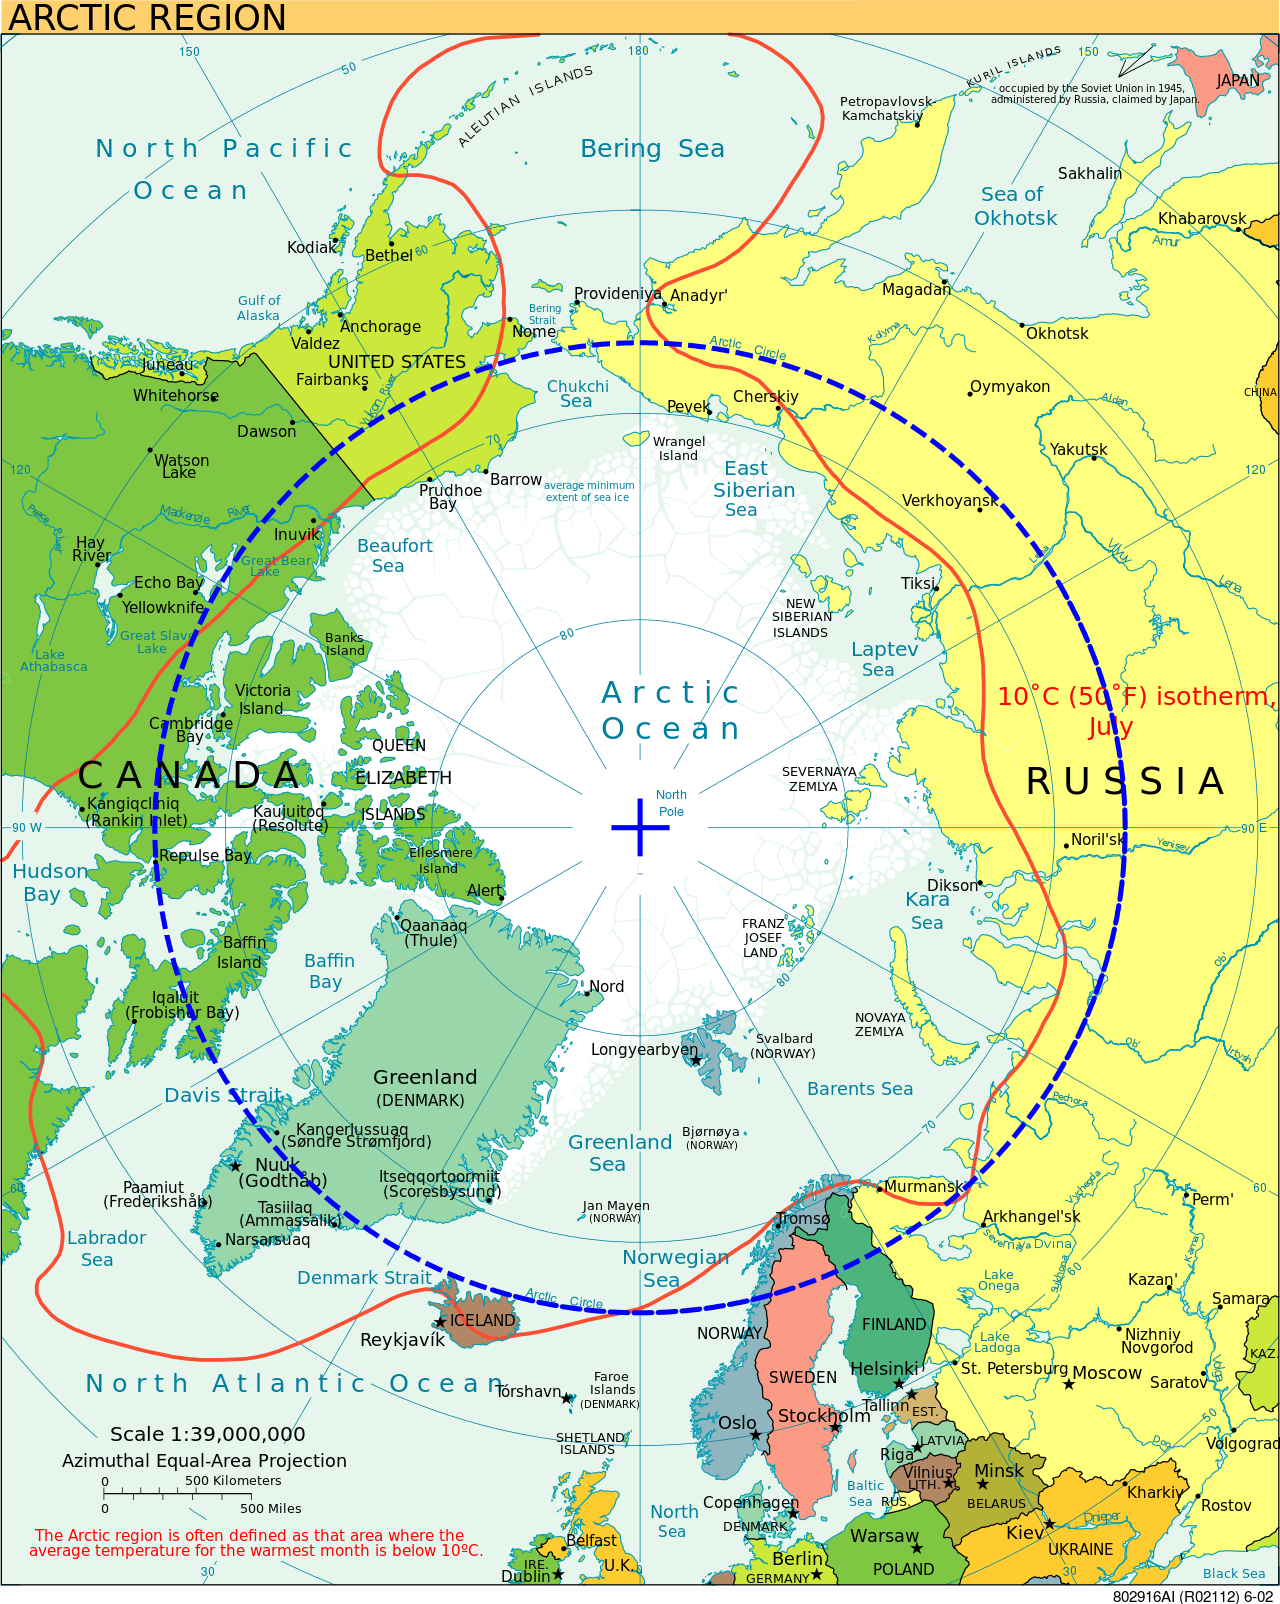 Arctic Circle polar theory